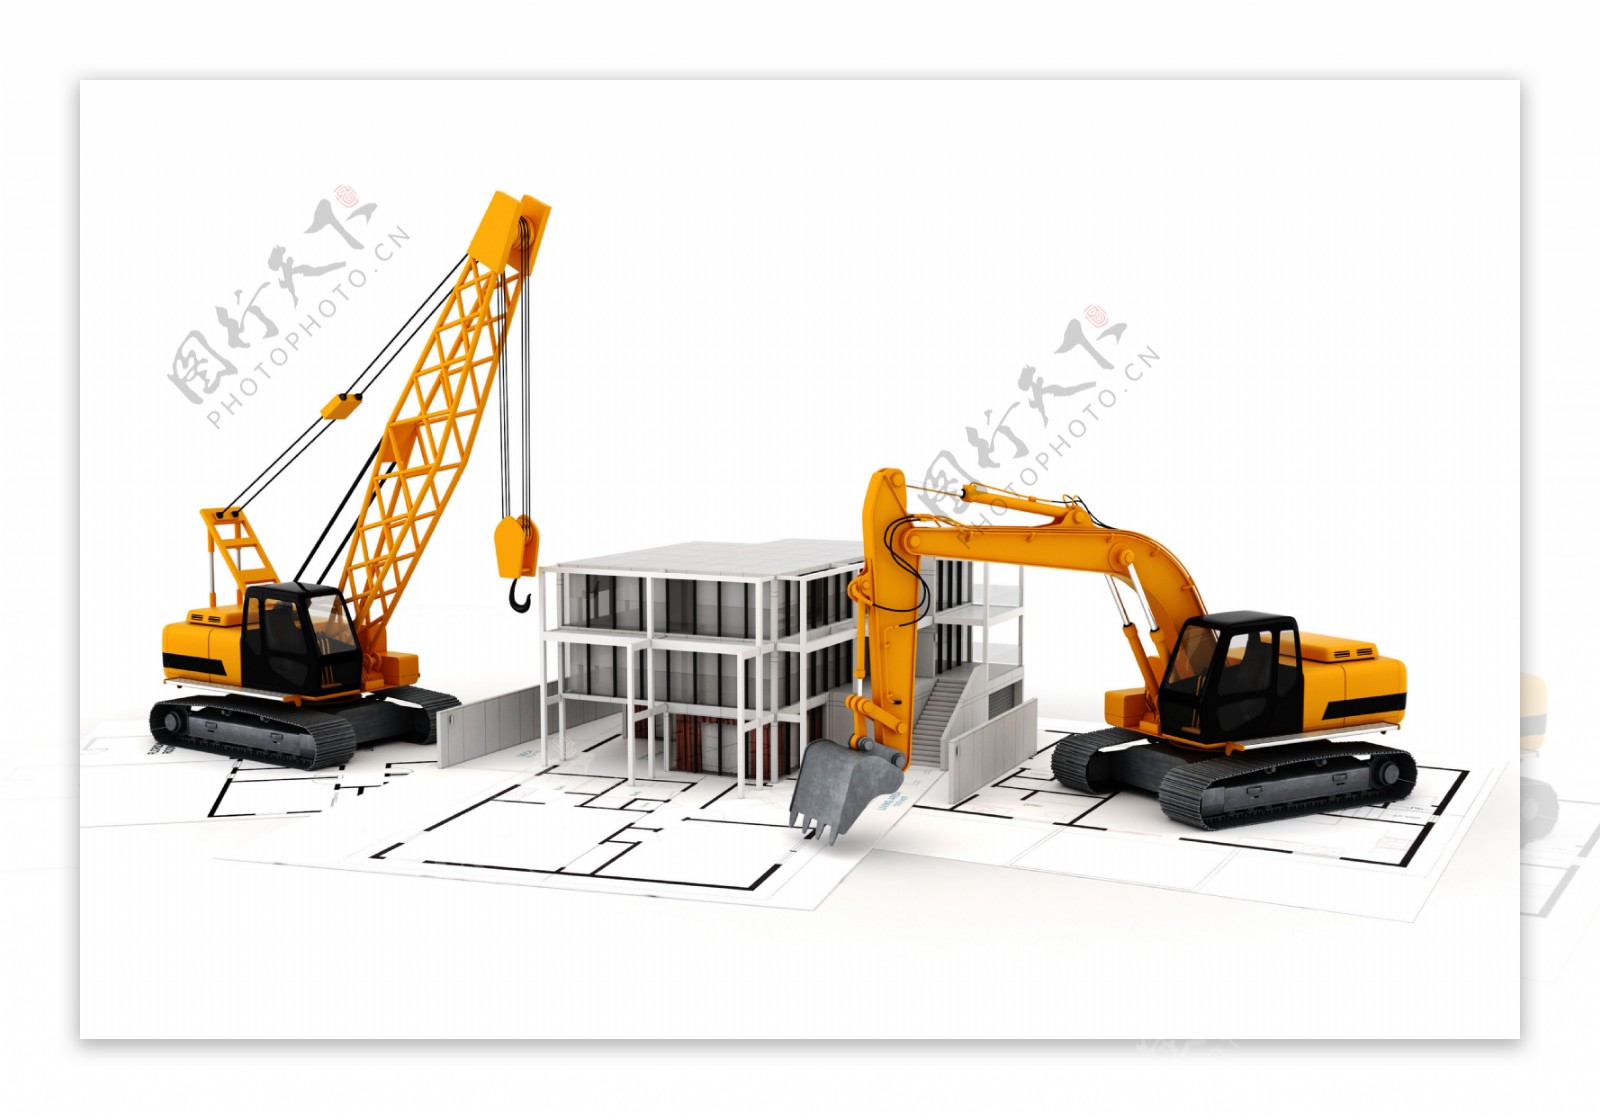 挖掘机与建筑模型